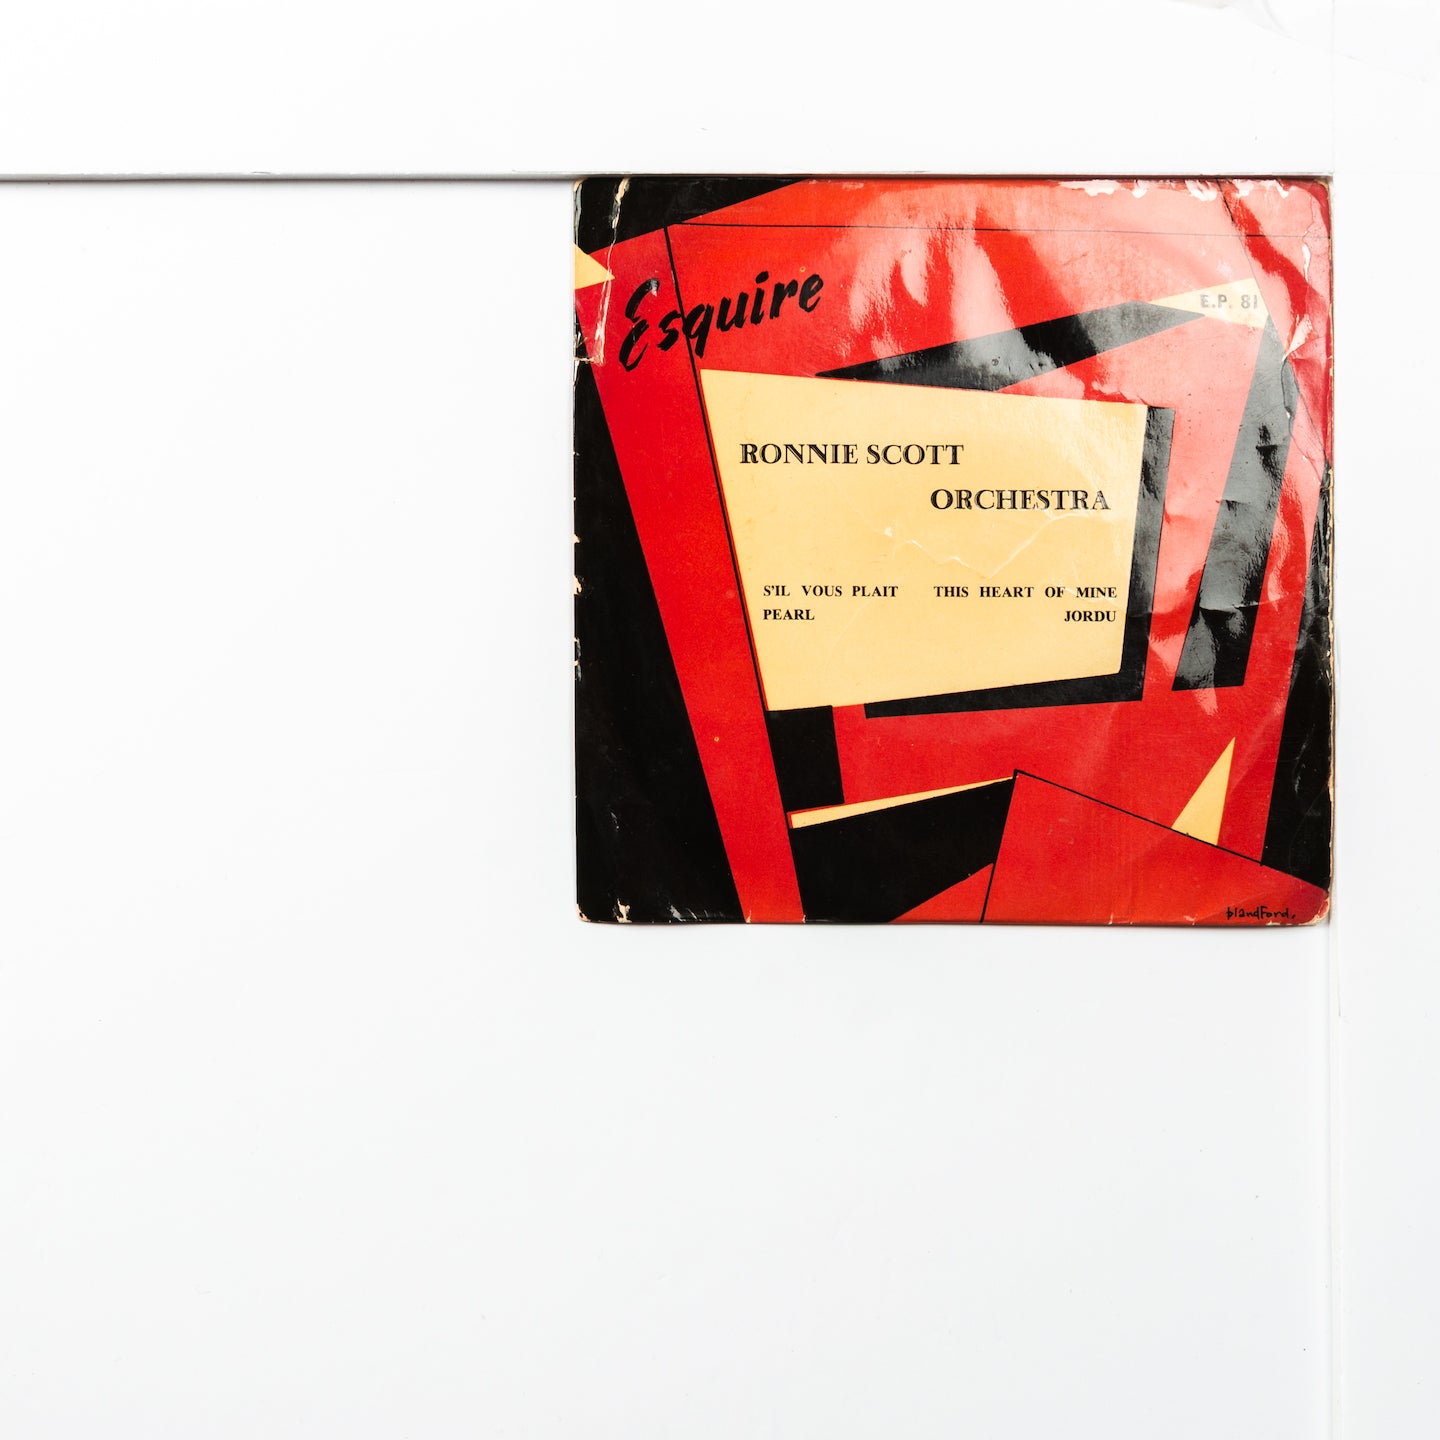 Ronnie Scott   Esquire EP81   Sil Vous Plait (2.360